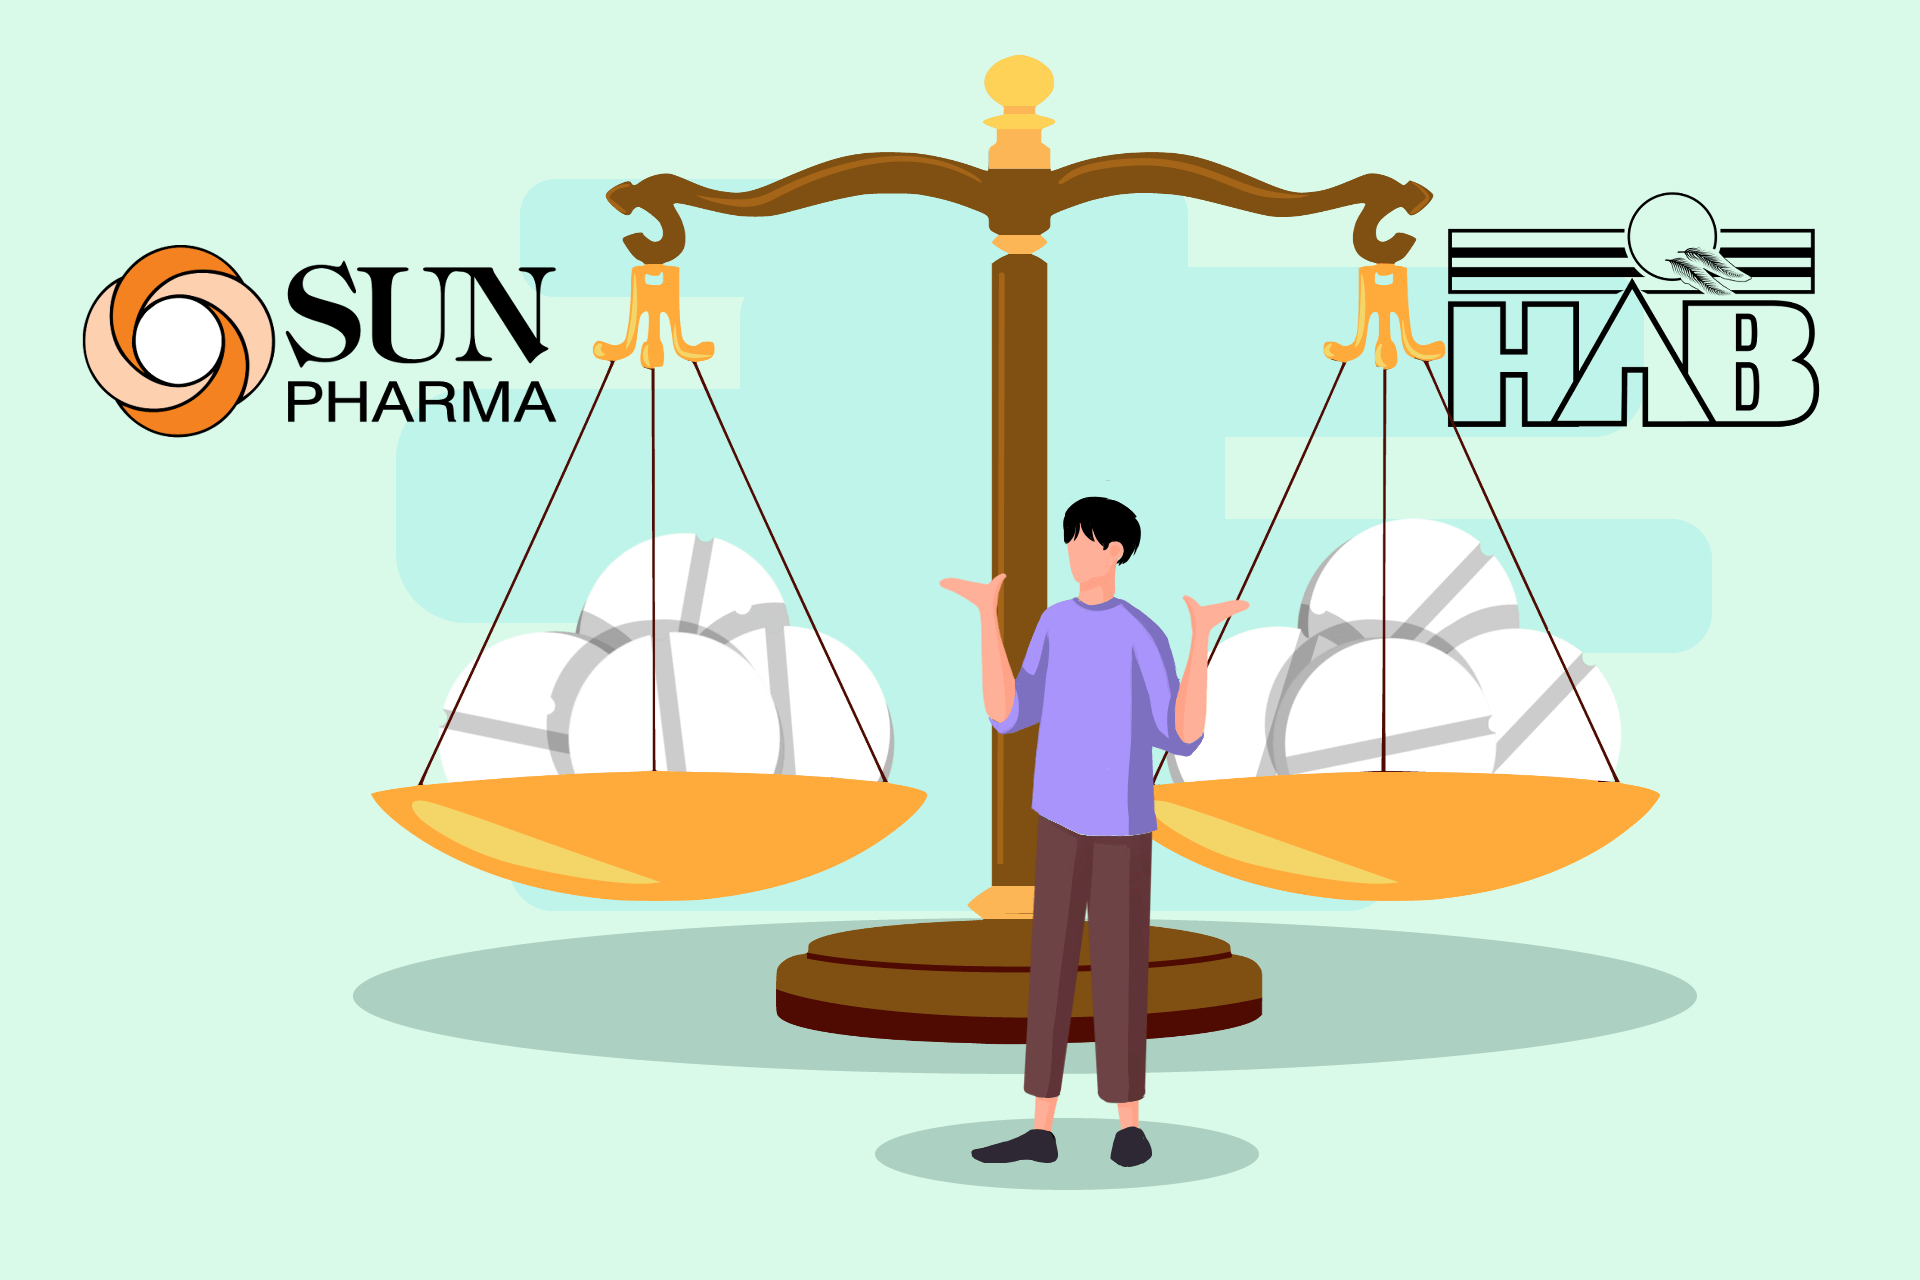 Sun Pharma vs. HAB Pharma